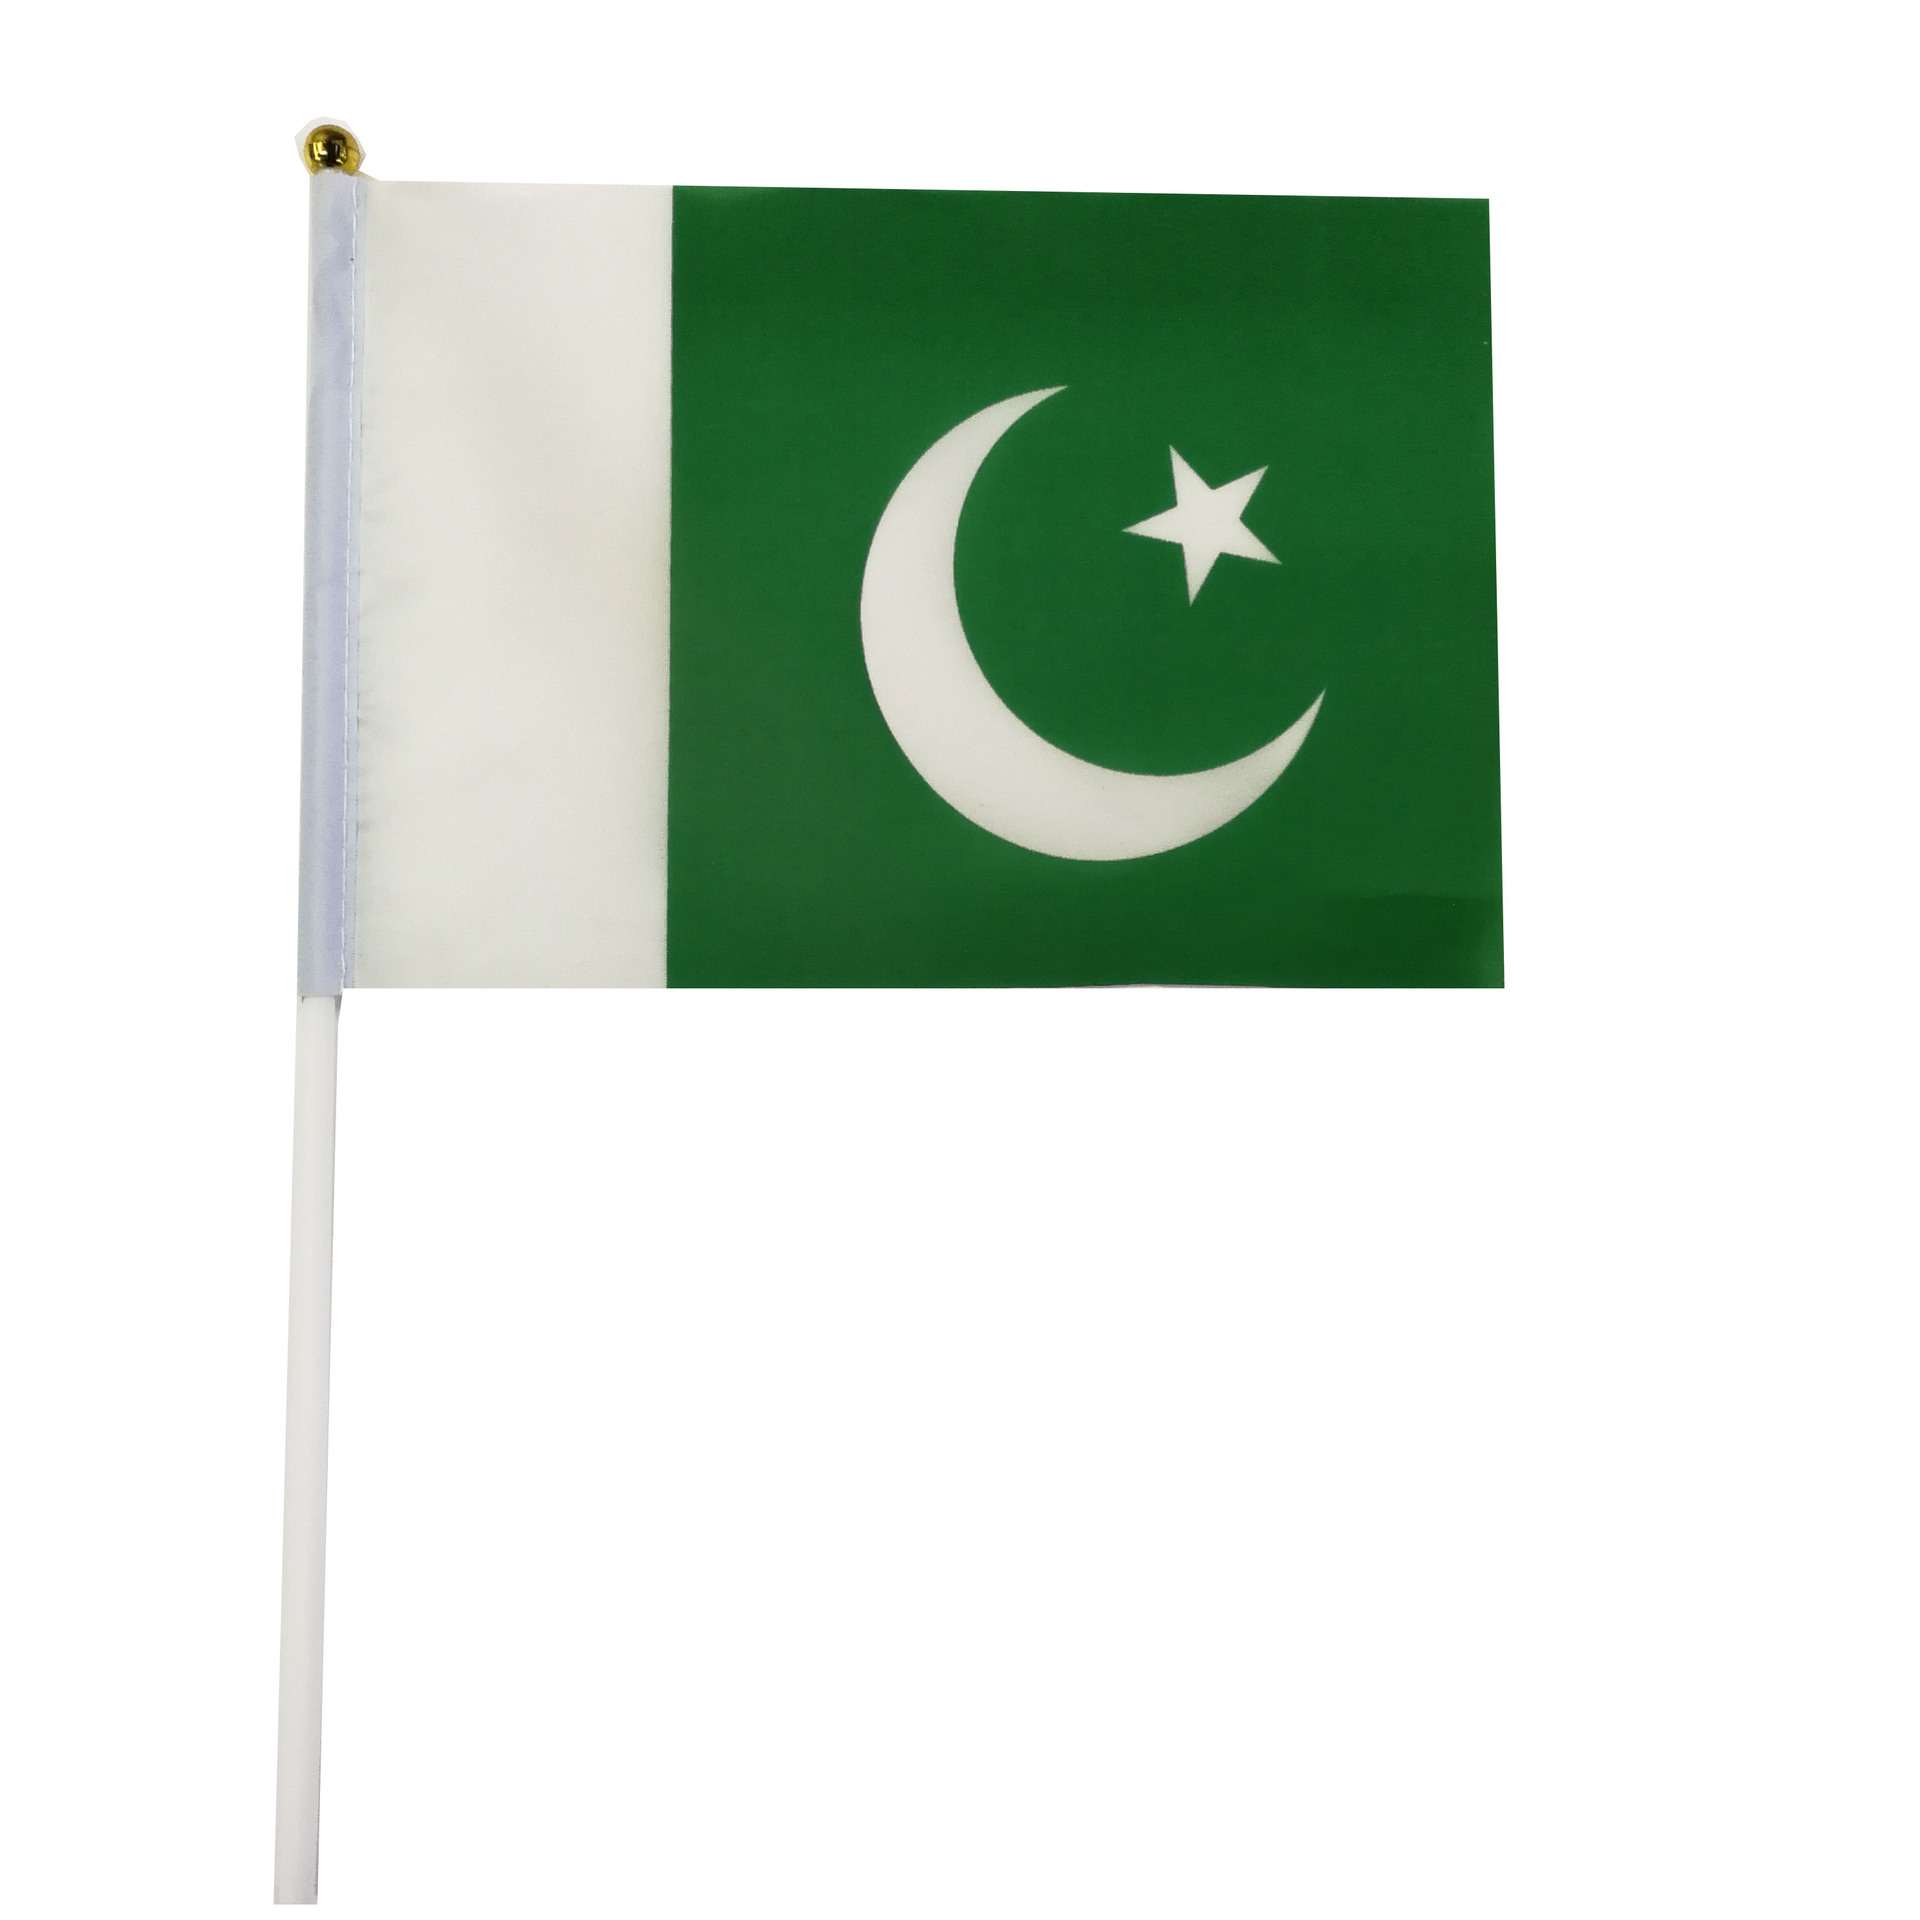 巴基斯坦旗帜国旗手摇旗涤纶双面印刷塑料旗杆厂家直销可来样定做